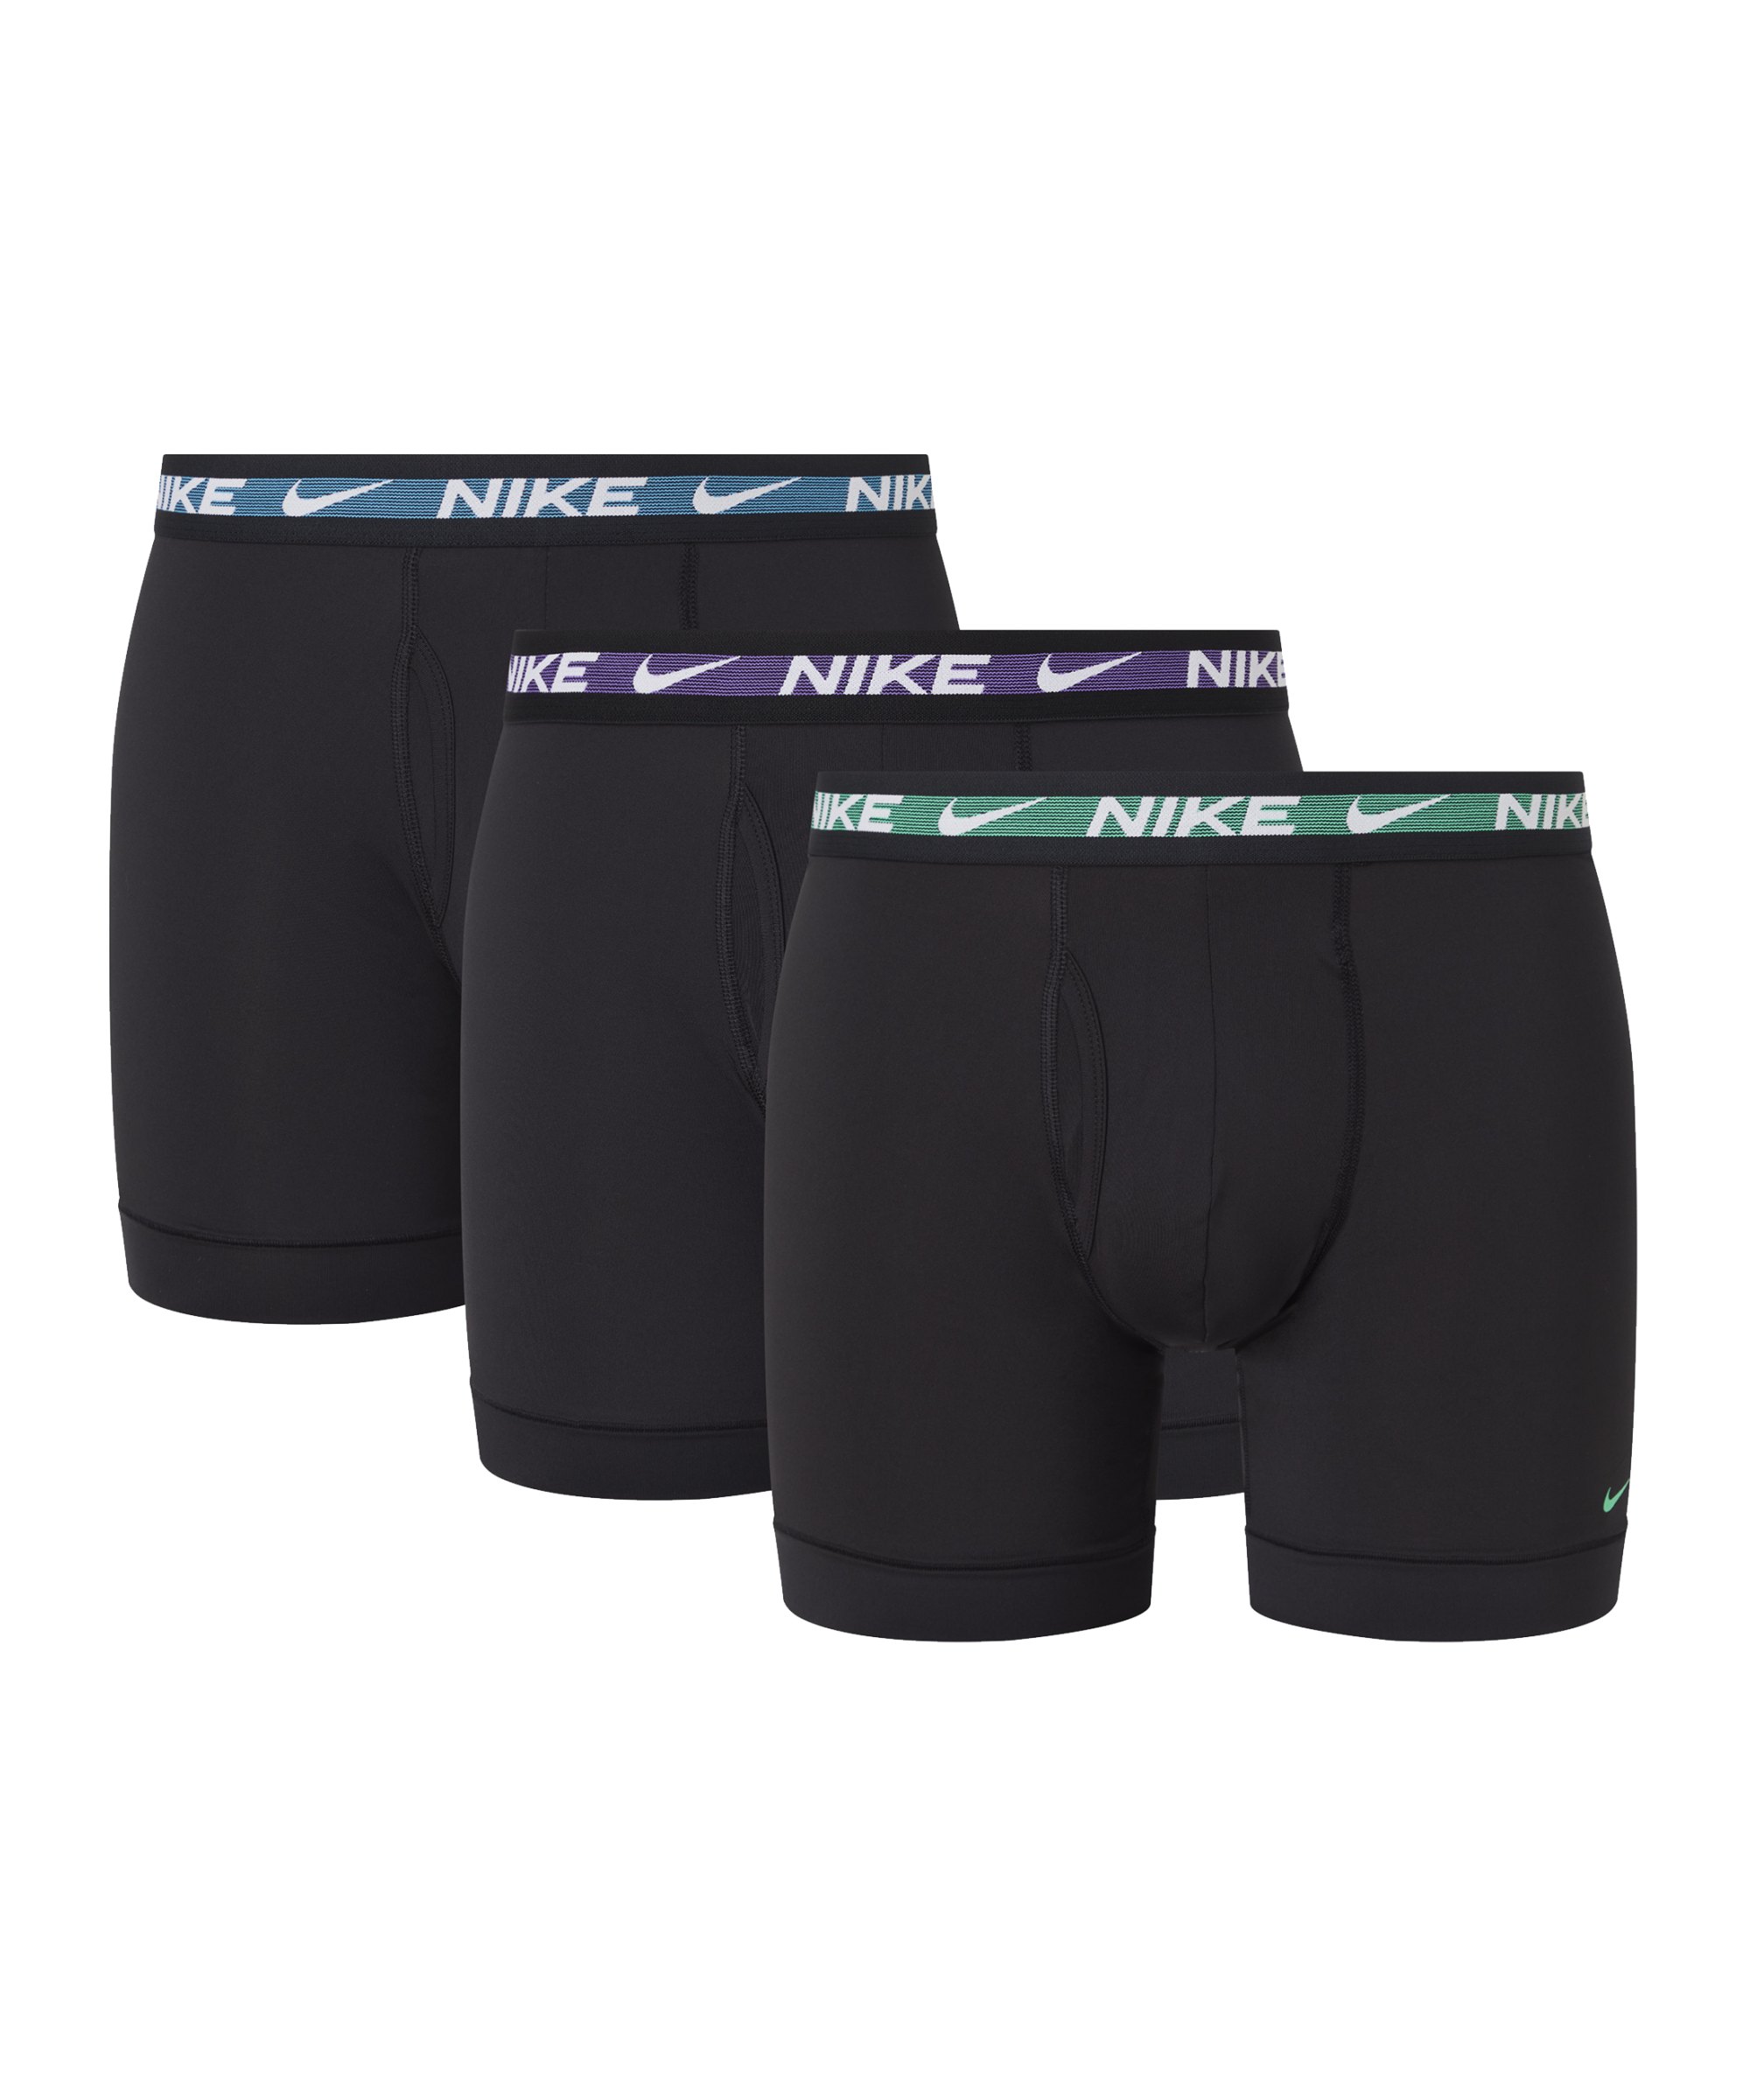 Nike Dri-Fit Brief Boxershort 3er Pack F2NV - schwarz